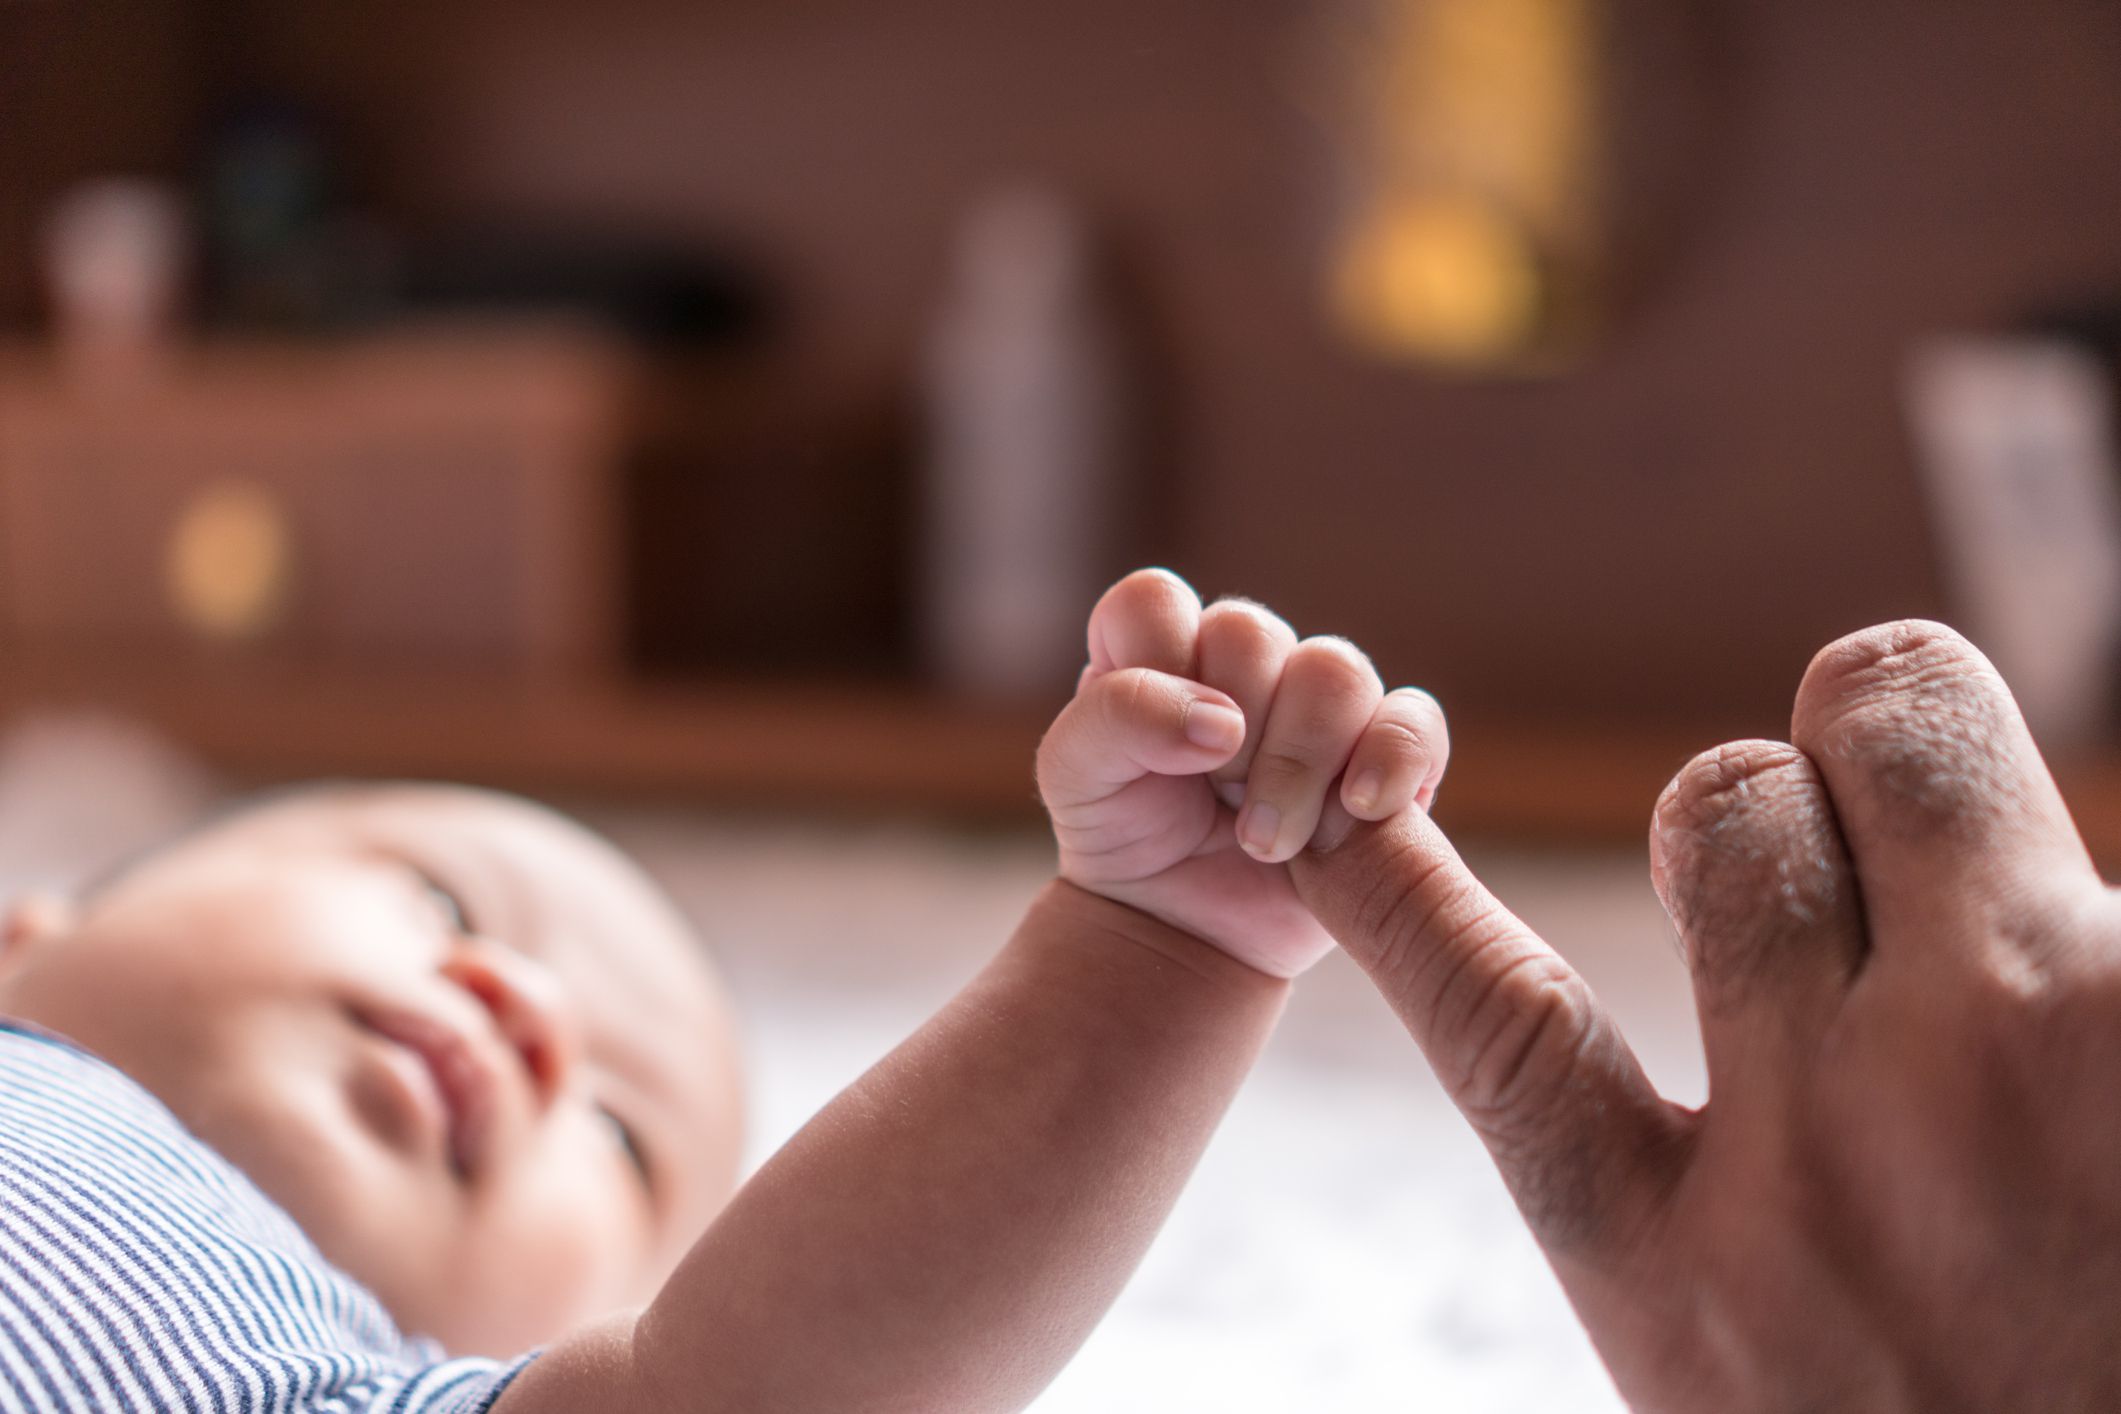 المنعكسات والحركات اللاإرادية الطبيعية عند الأطفال الرضع